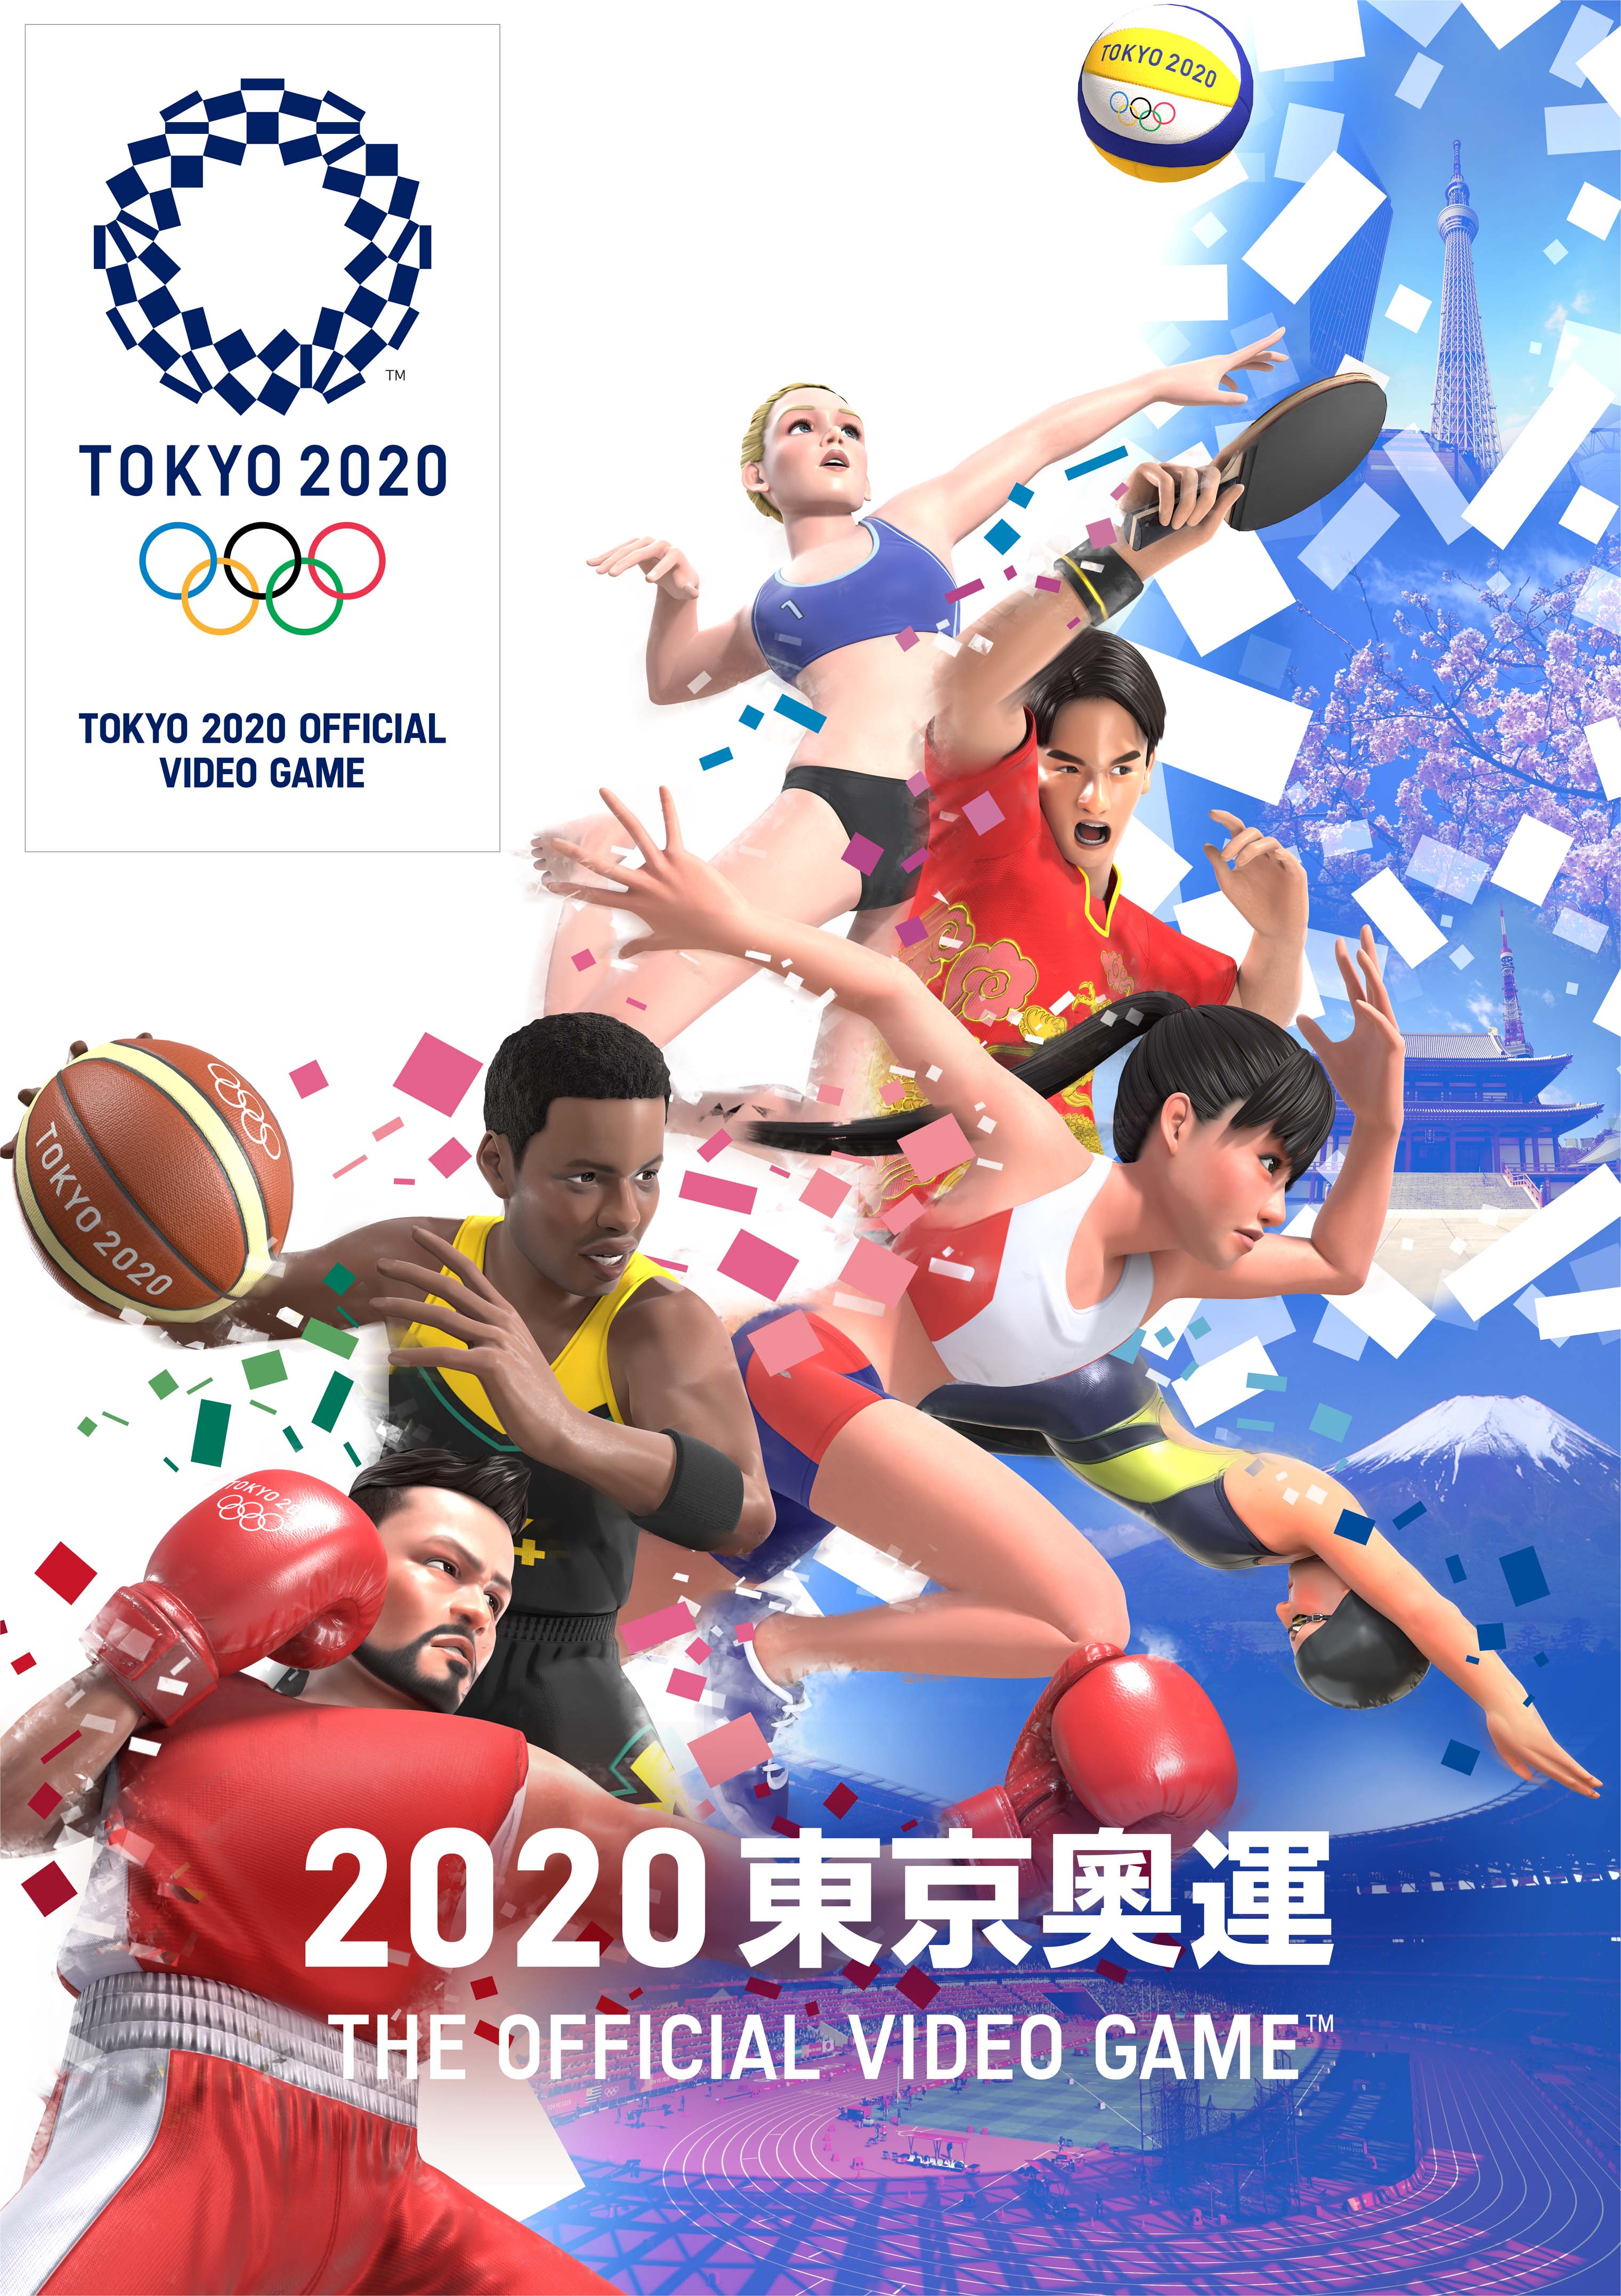 《2020东京奥运》追加竞技项目“运动攀登”今日开放下载！ 